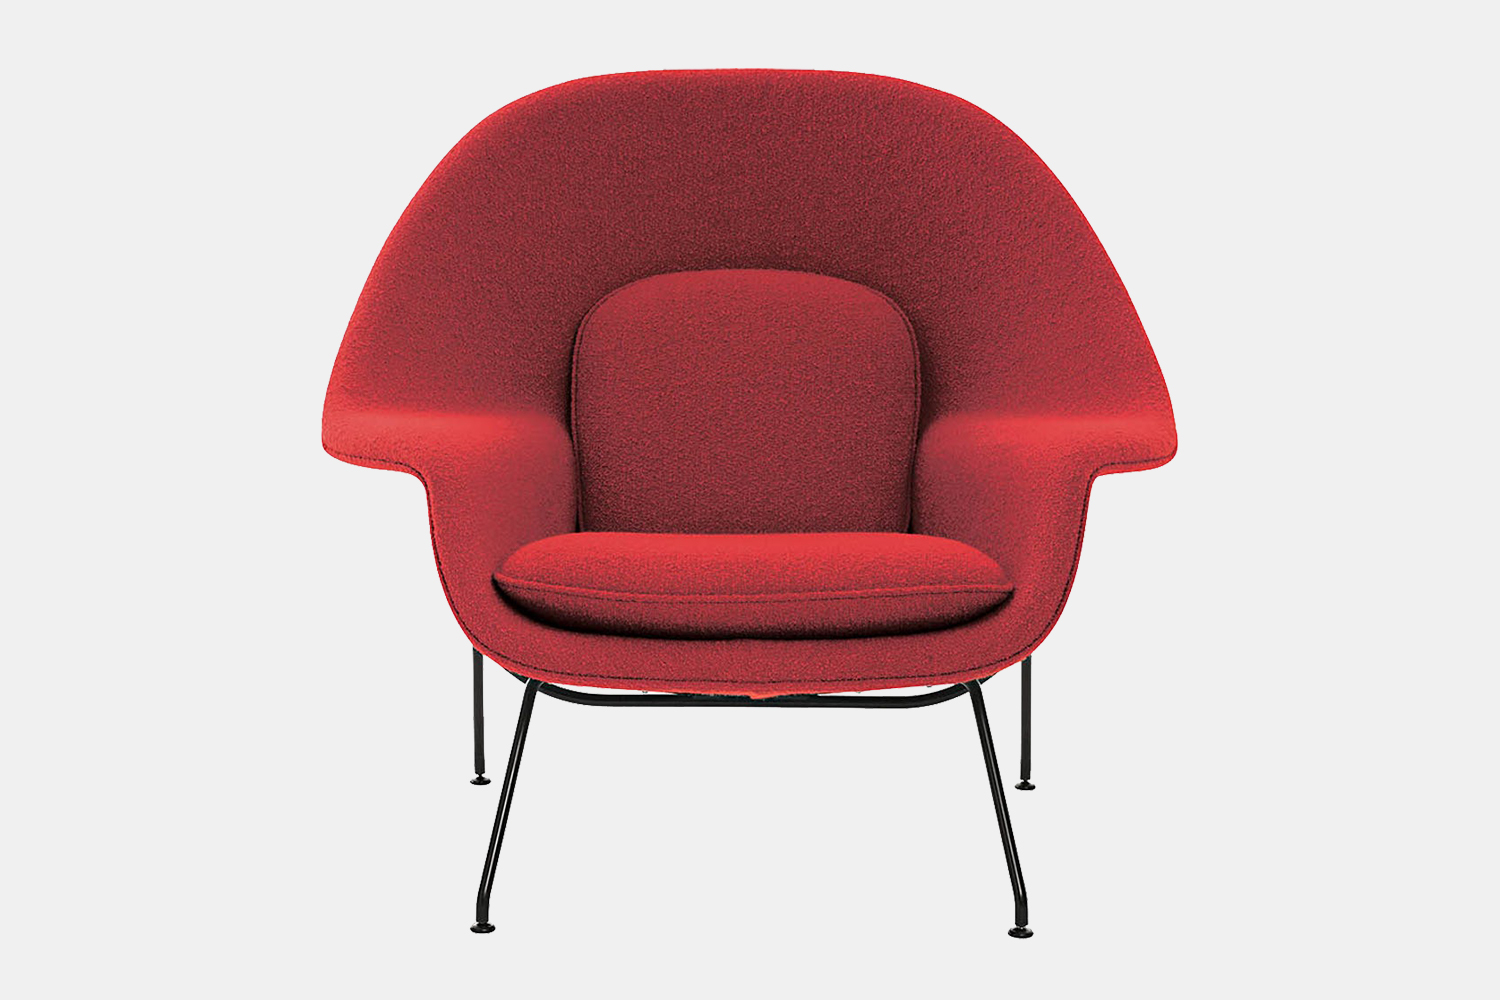 Red Womb Chair from Finnish-American designer Eero Saarinen